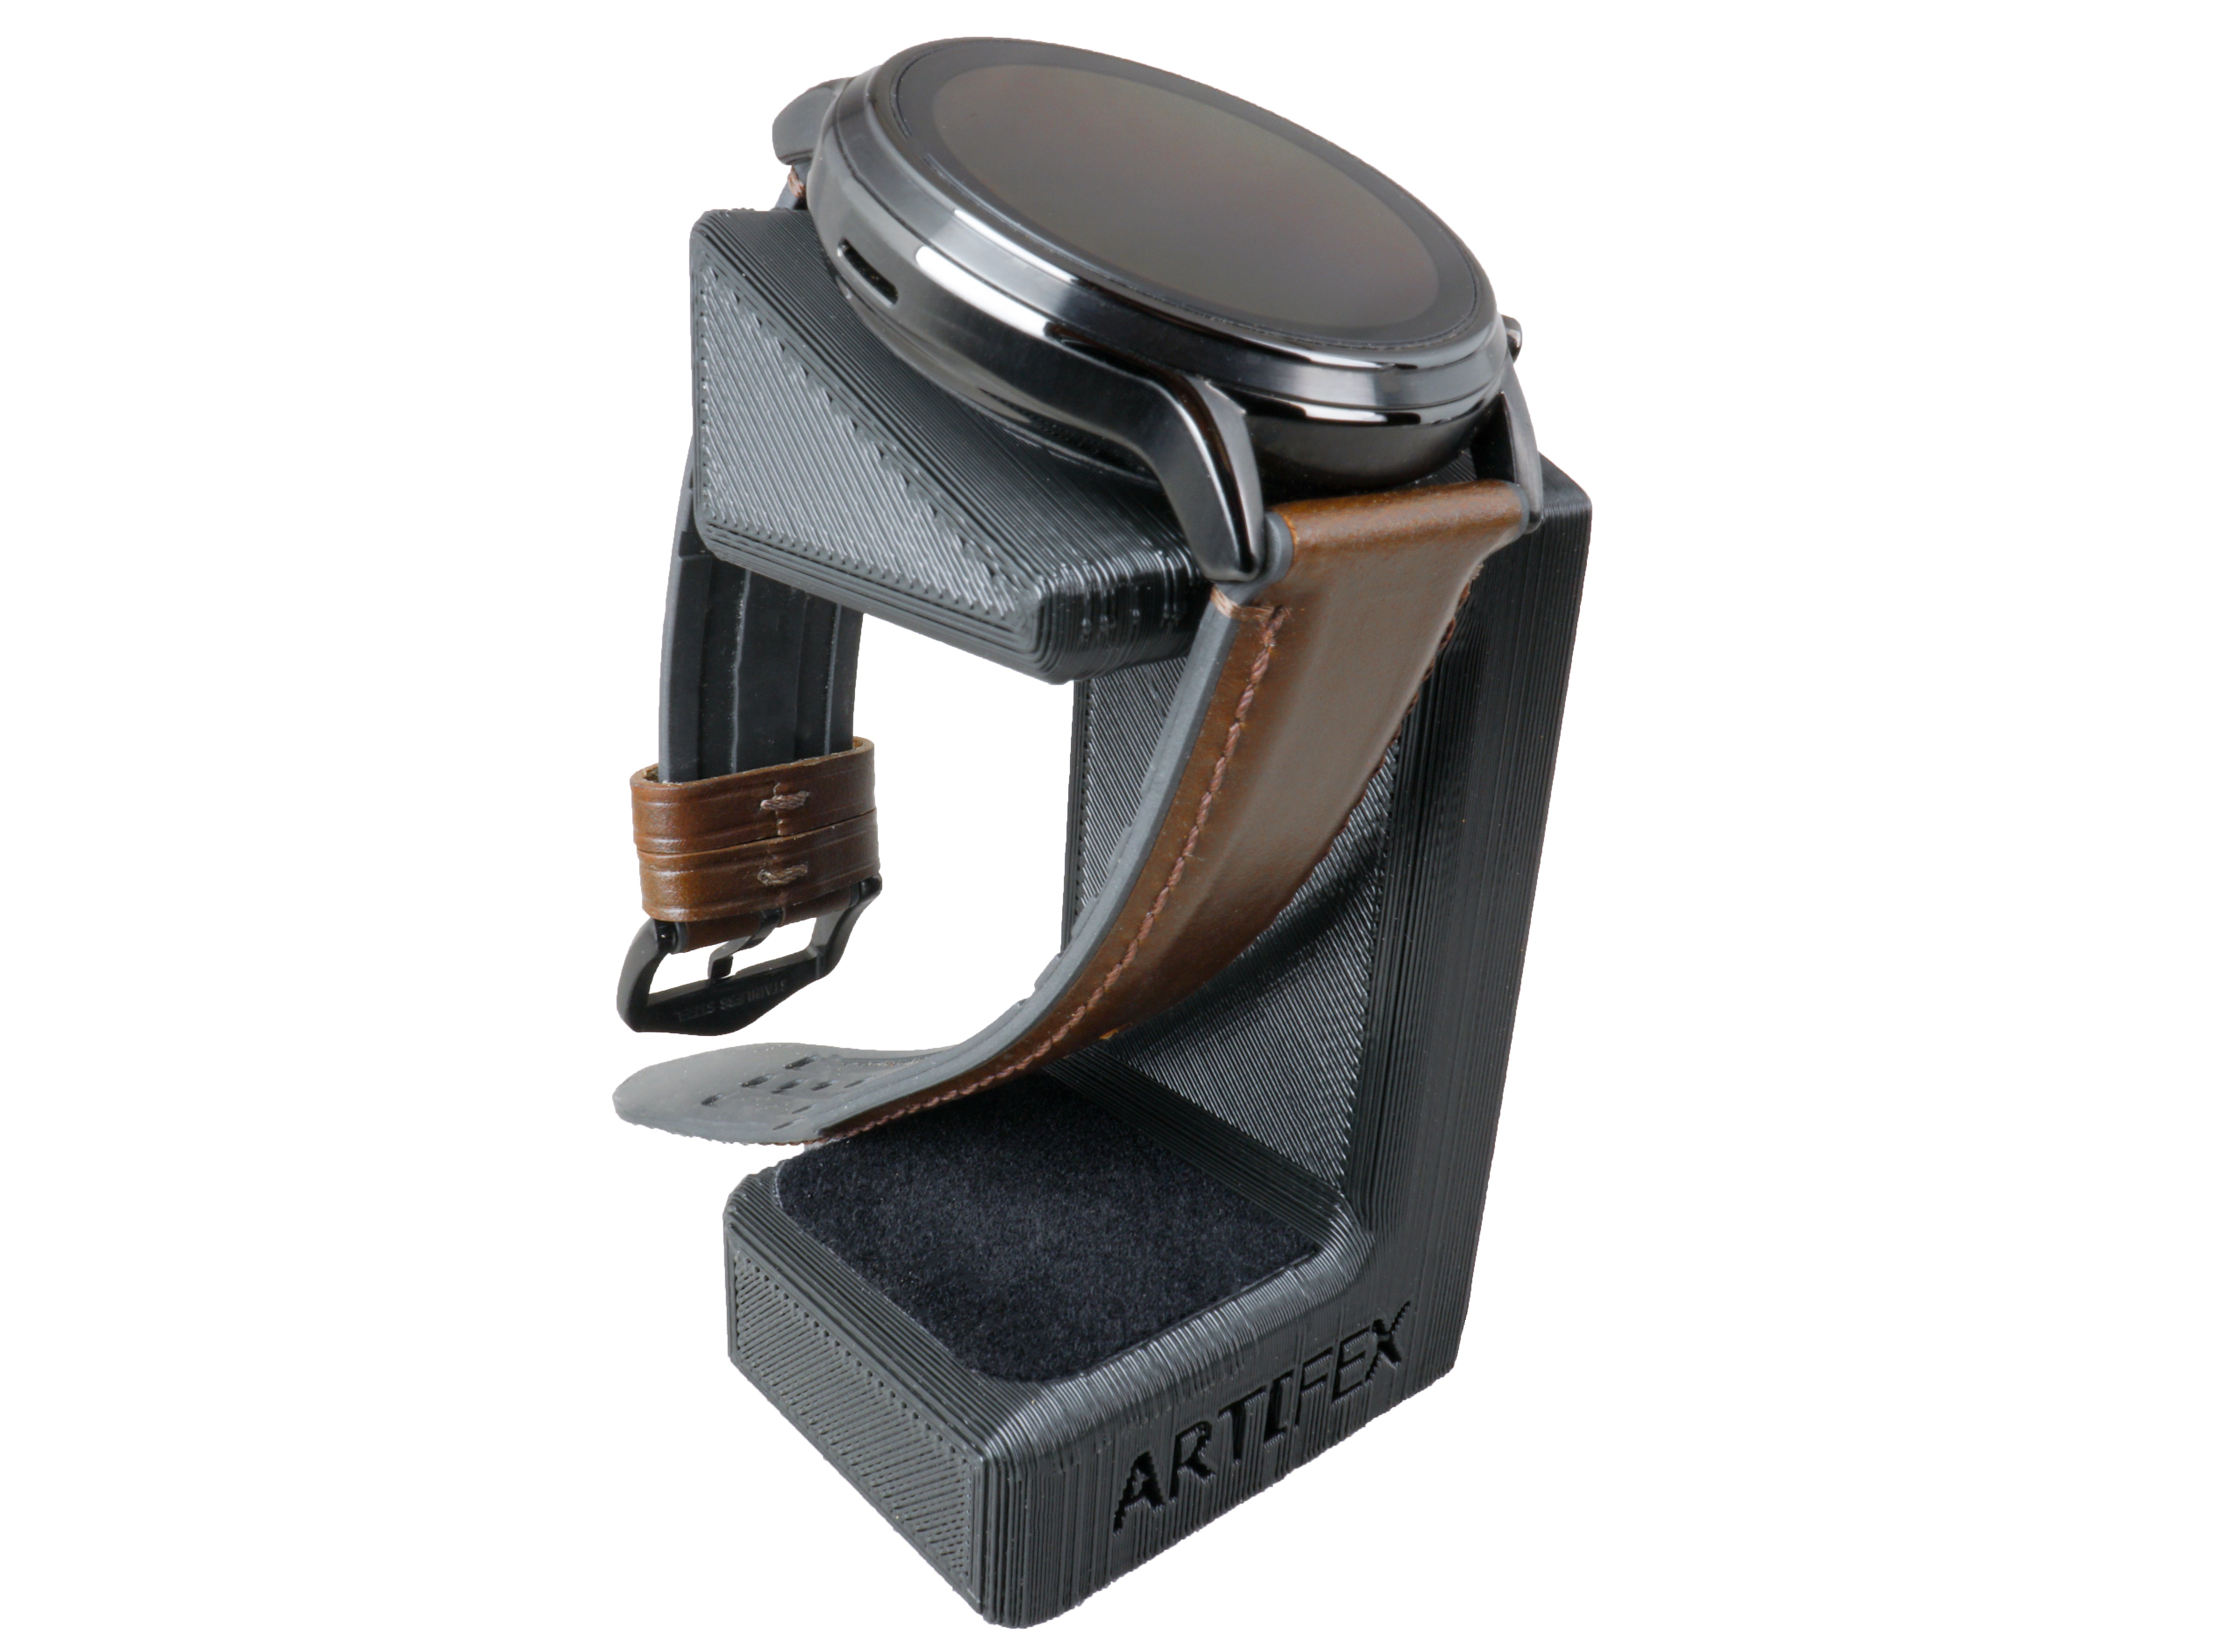 Fossil Gen 4/ 5/ MK/ Skagen/ Emporio Armani/ Diesel/ Smartwatch Stand by Artifex Design - Artifex Design 3D